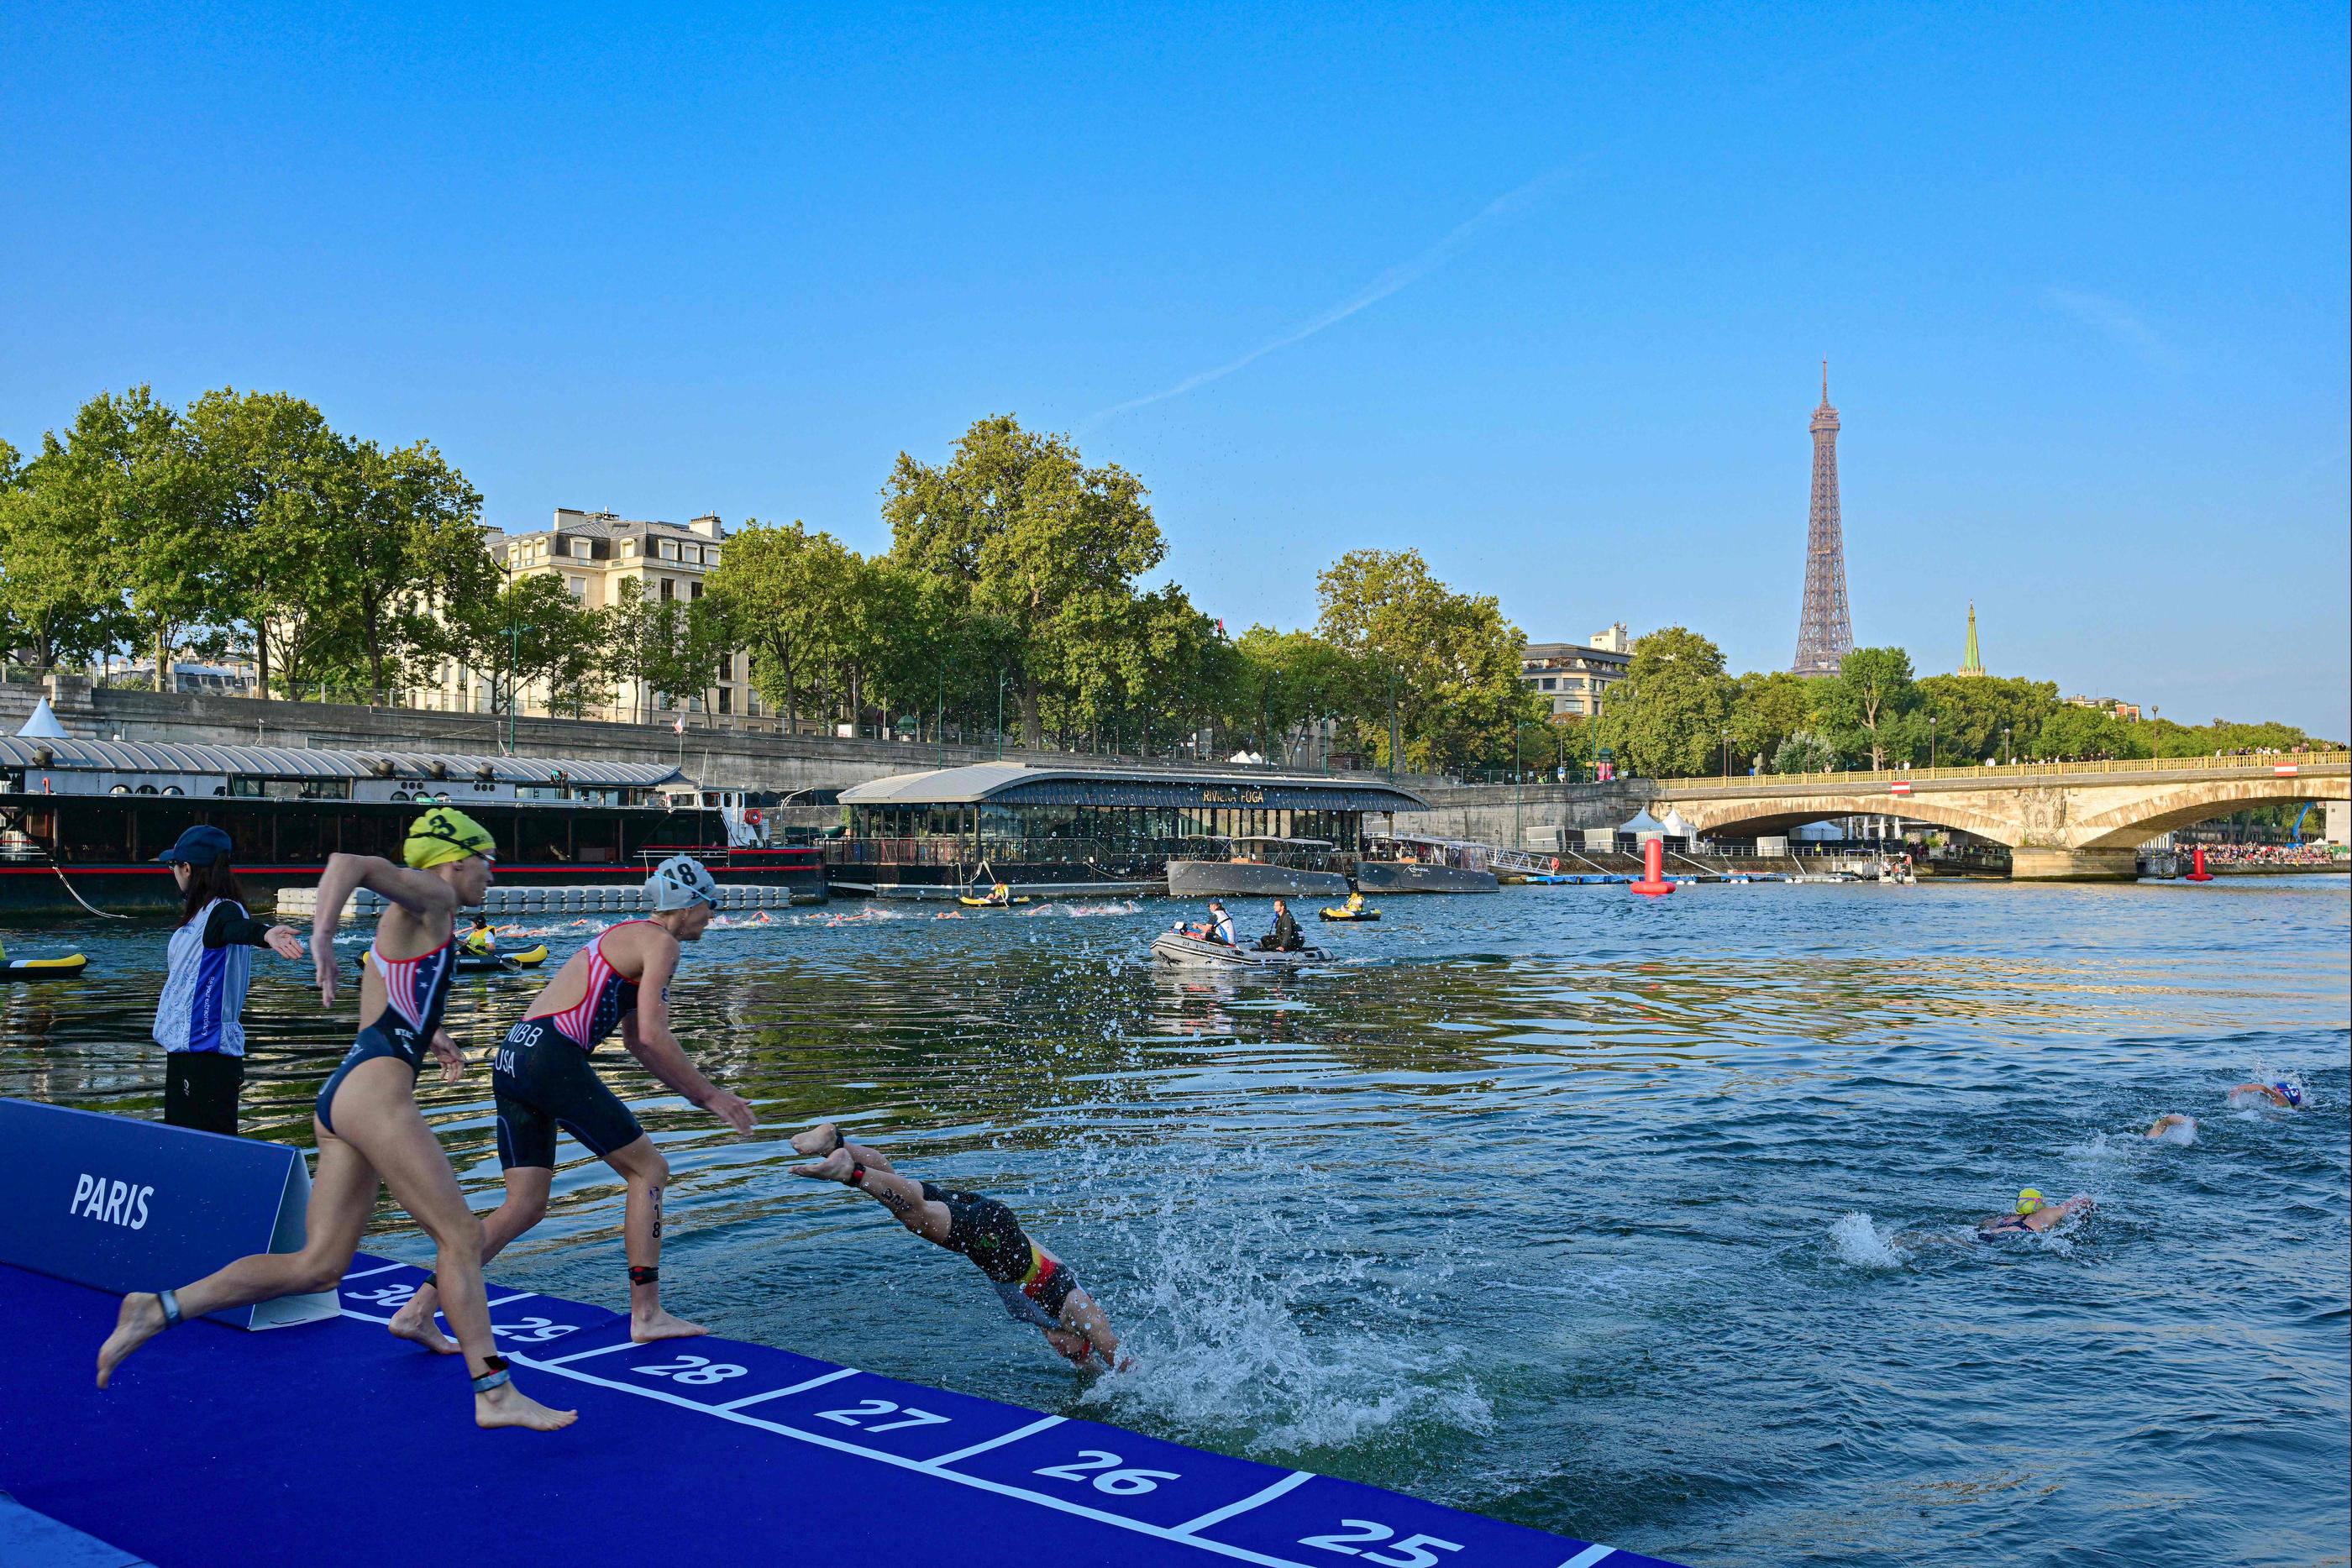 L'épreuve féminine de triathlon organisée jeudi matin au cœur de Paris a offert des images exceptionnelles de la capitale. AFP/Miguel Medina